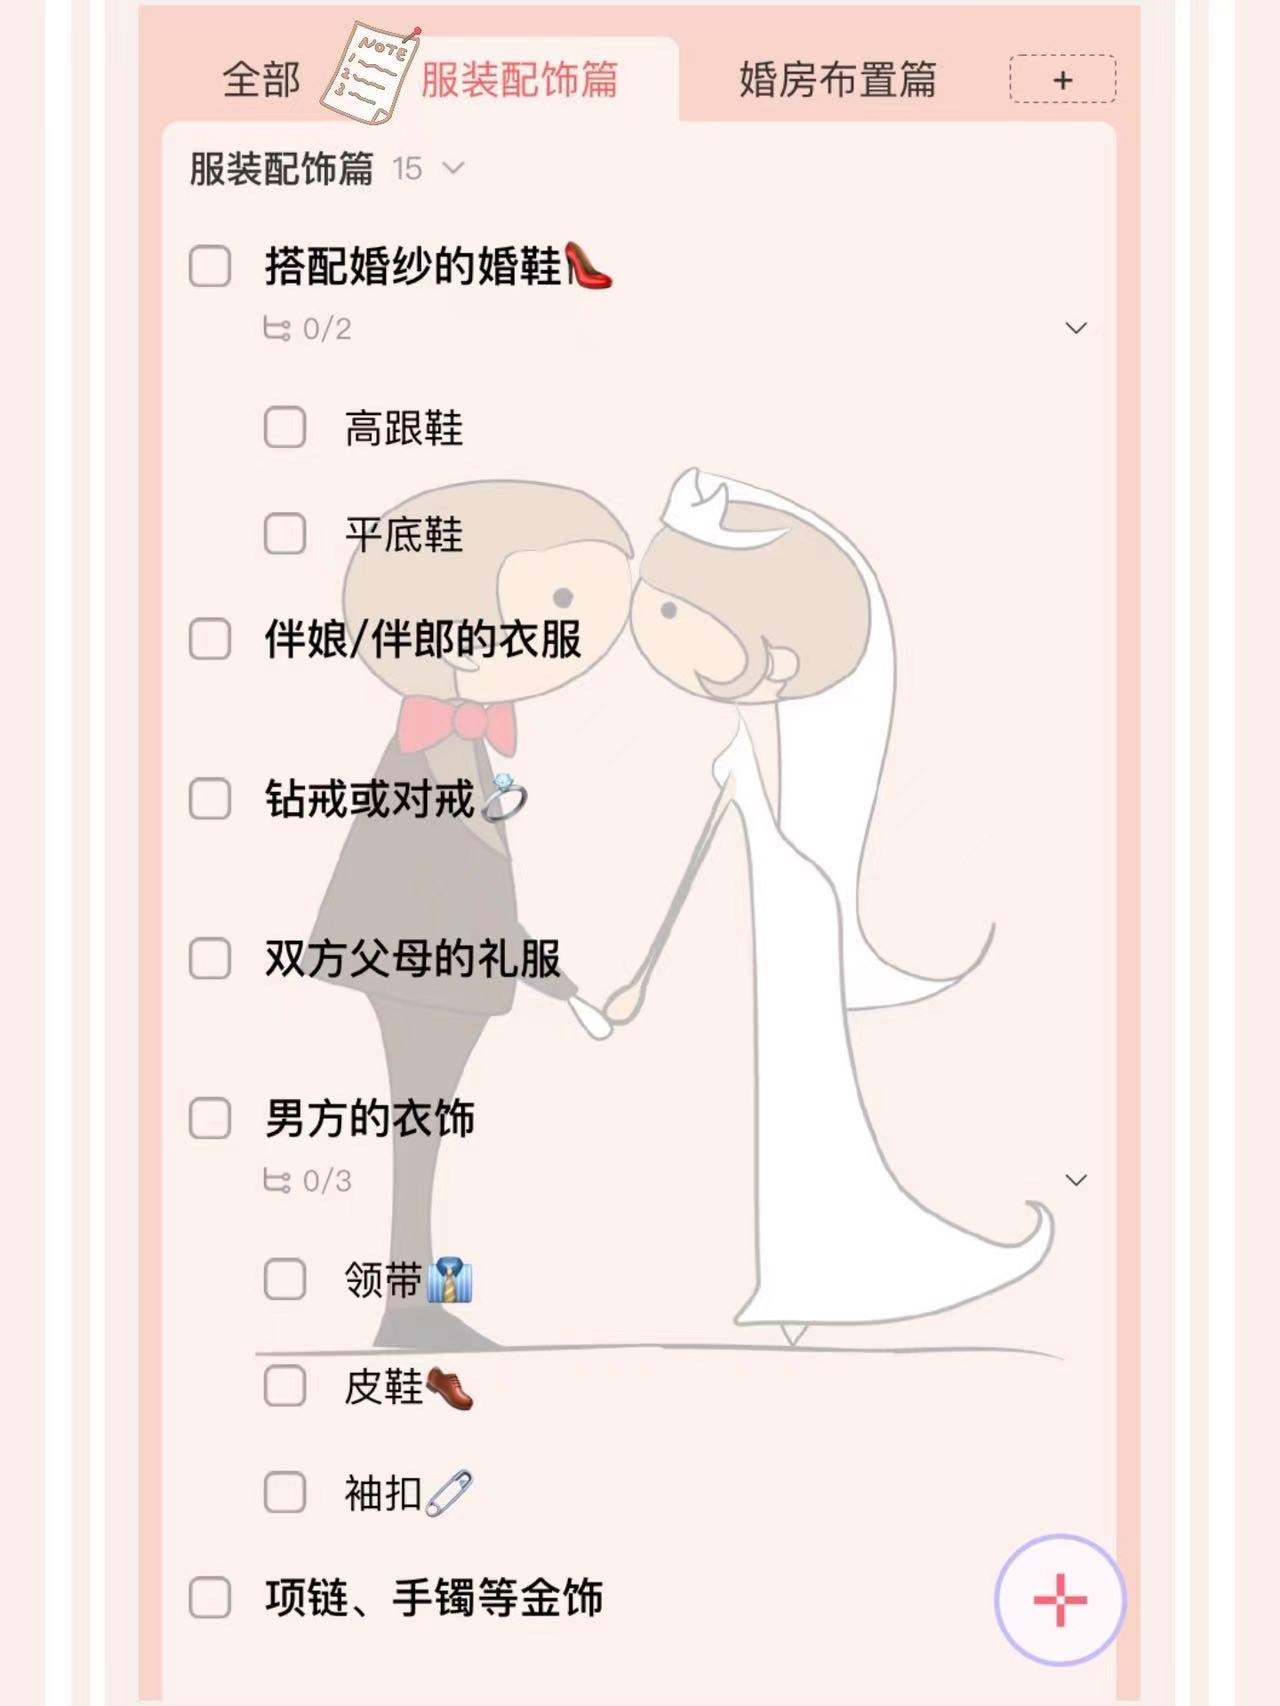 男方婚礼用品清单一览表(超详细的婚礼用品必买清单)-风水人